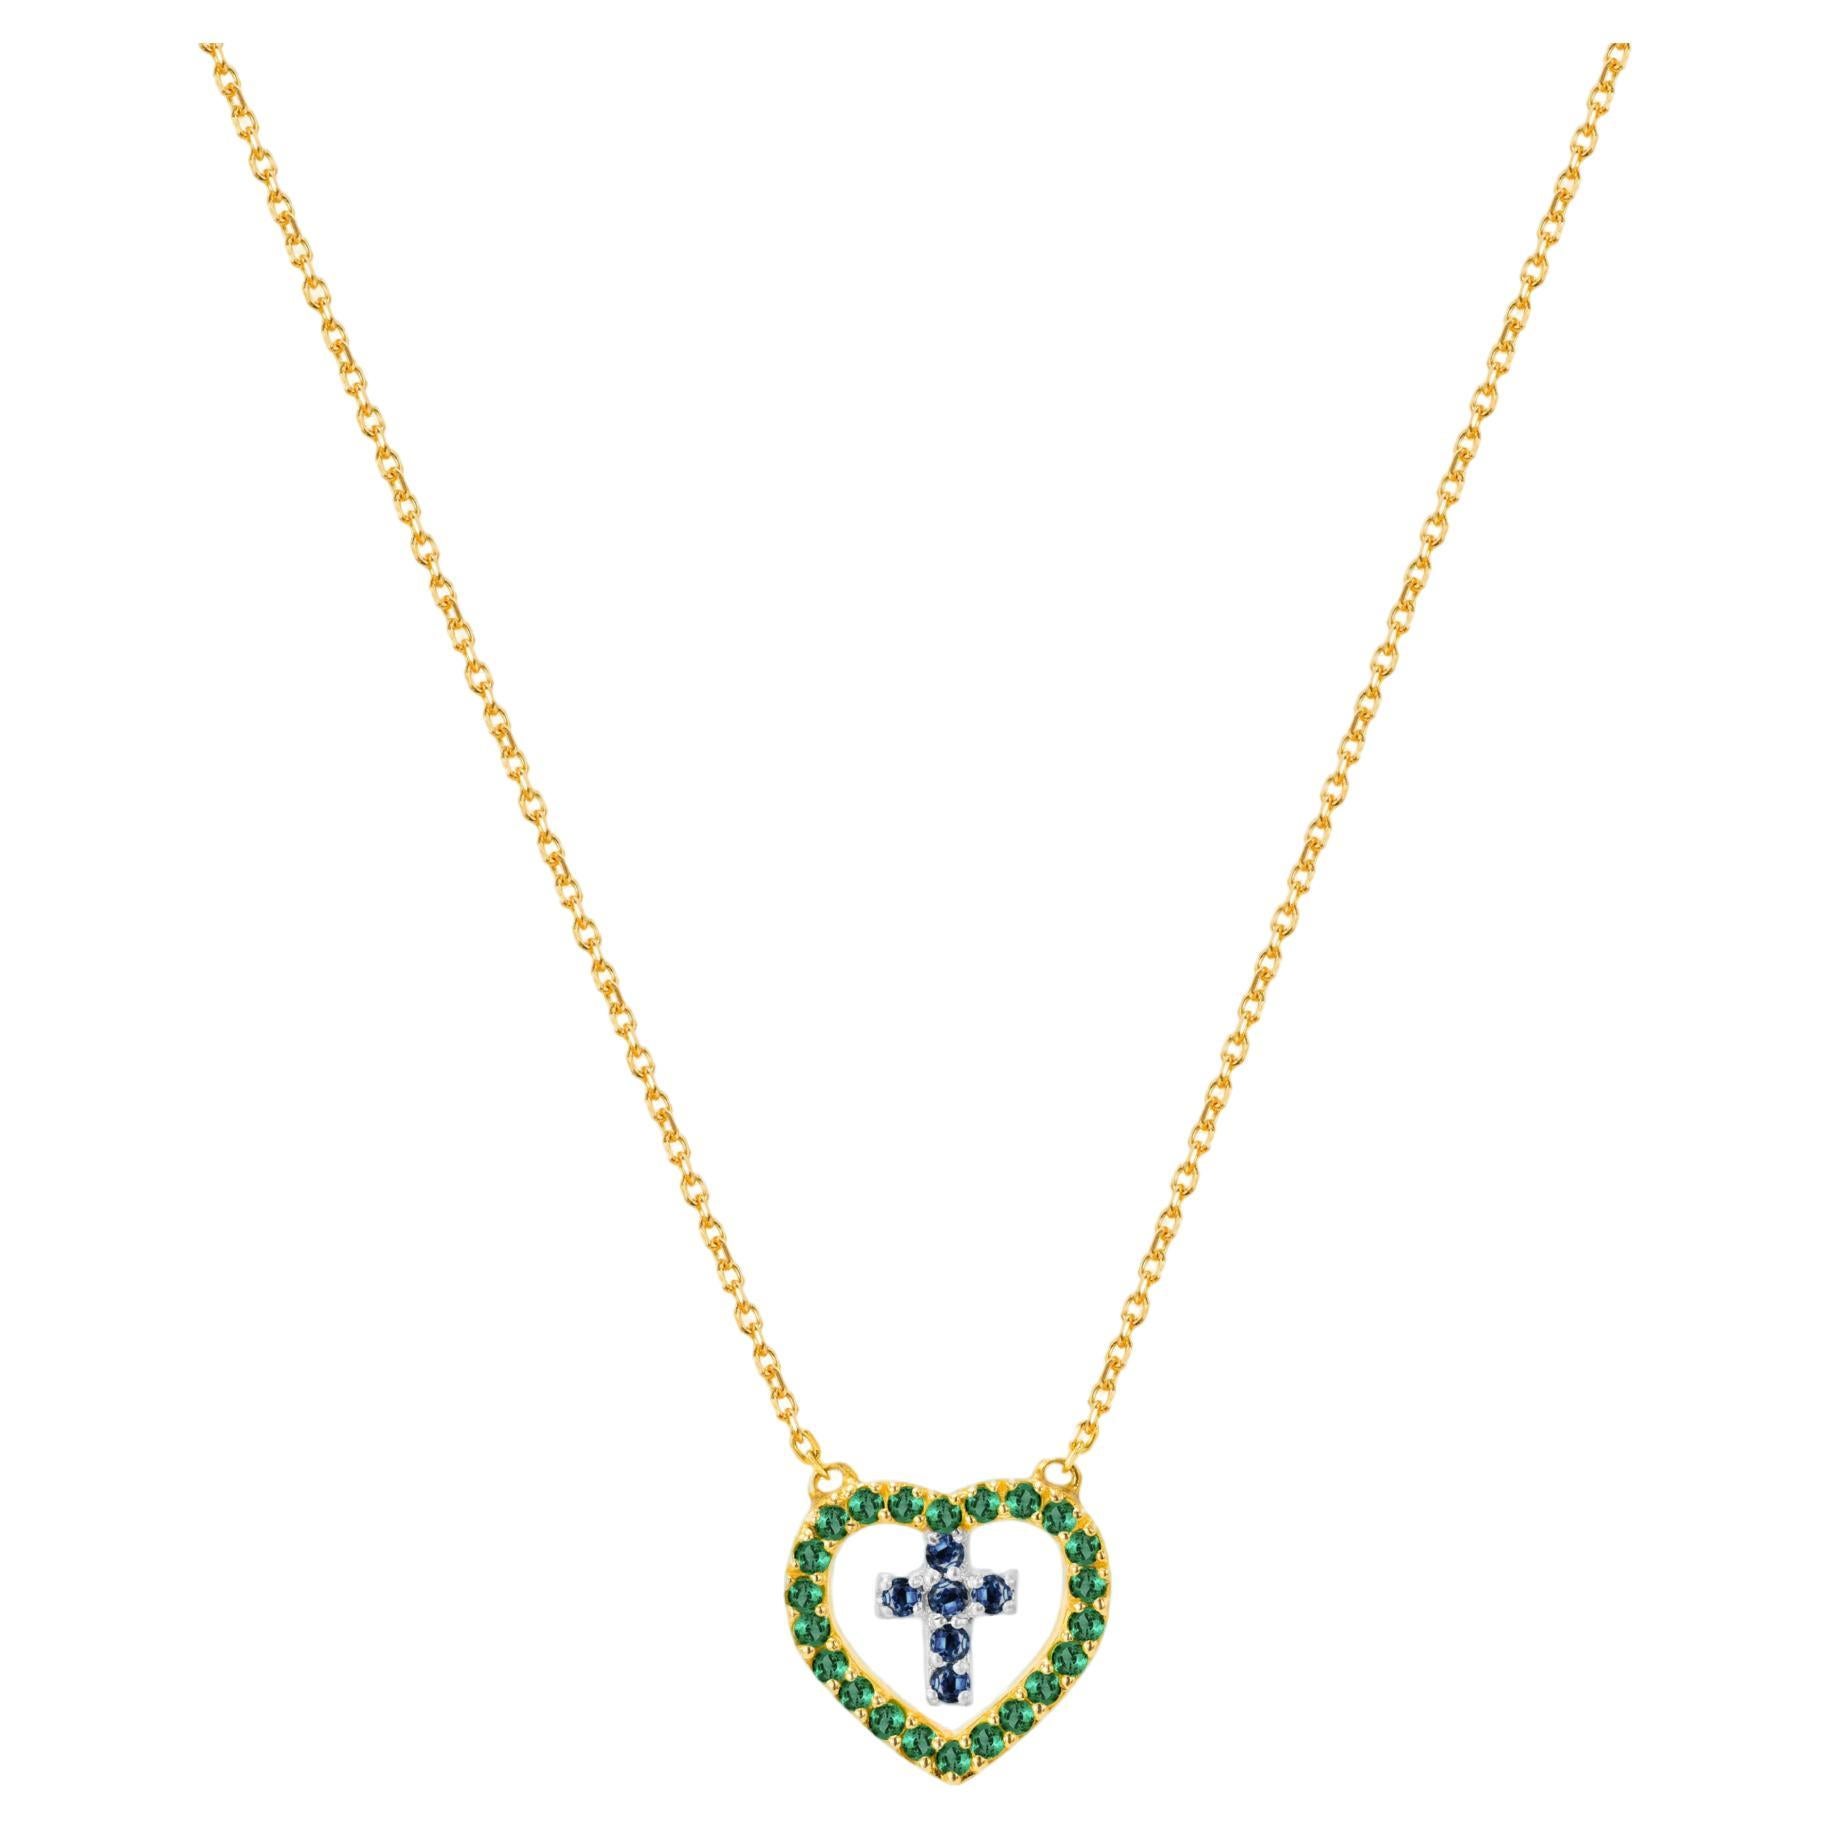 Halskette aus 14 Karat Gold mit echtem Smaragd und blauem Saphir Kreuz in Herz